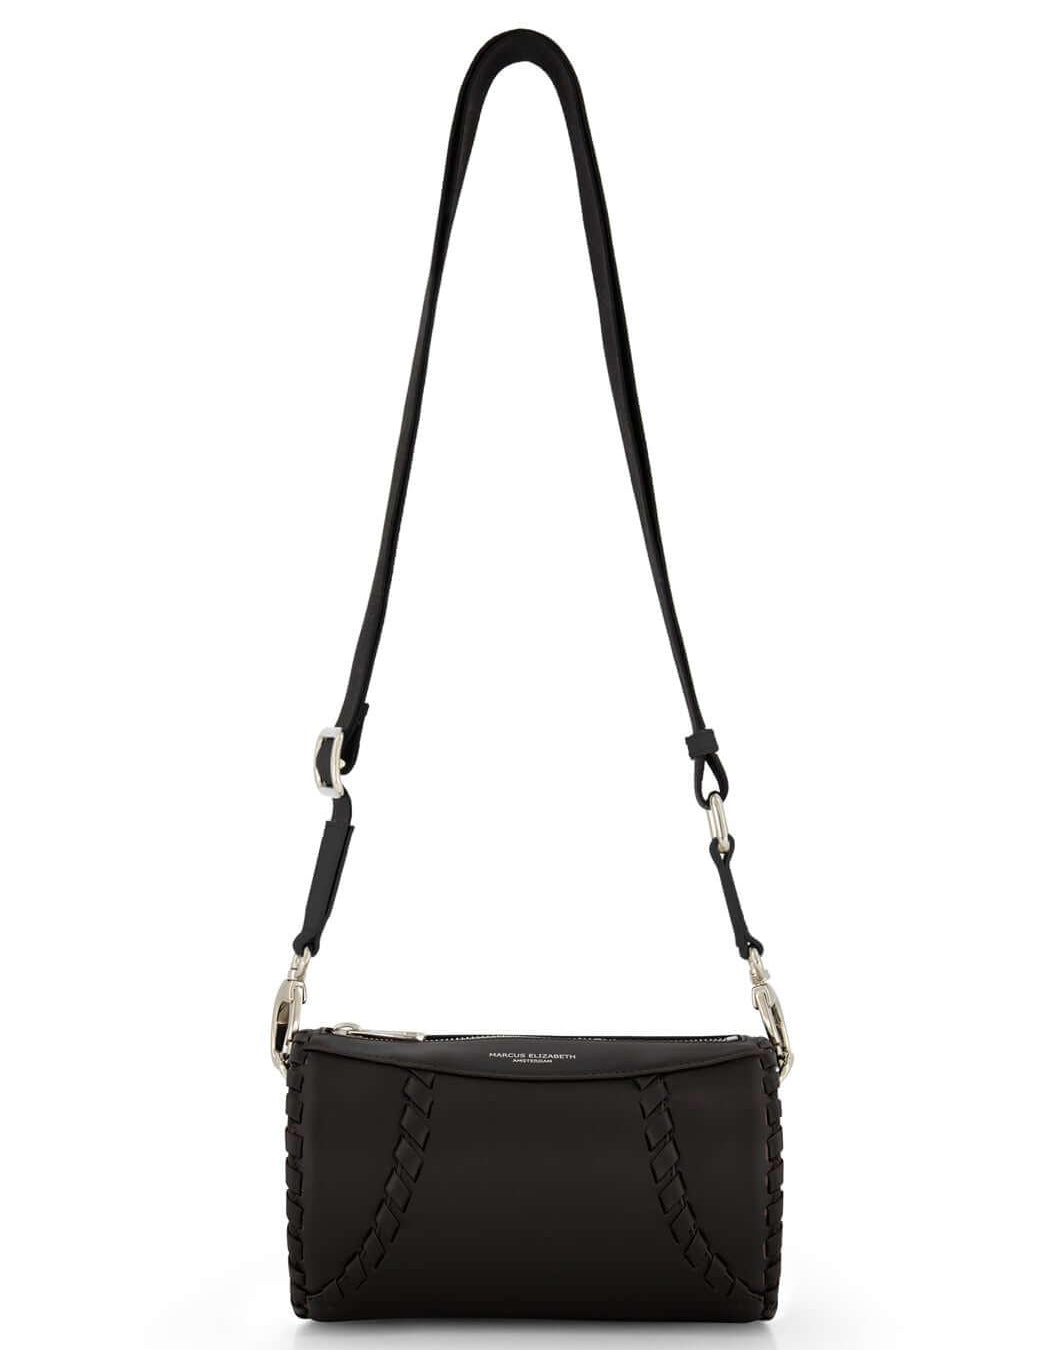 Tube Shoulder Bag Black - MARCUS ELIZABETH - Handbags - MARCUS ELIZABETH - Tube Shoulder Bag Black - MARCUS ELIZABETH